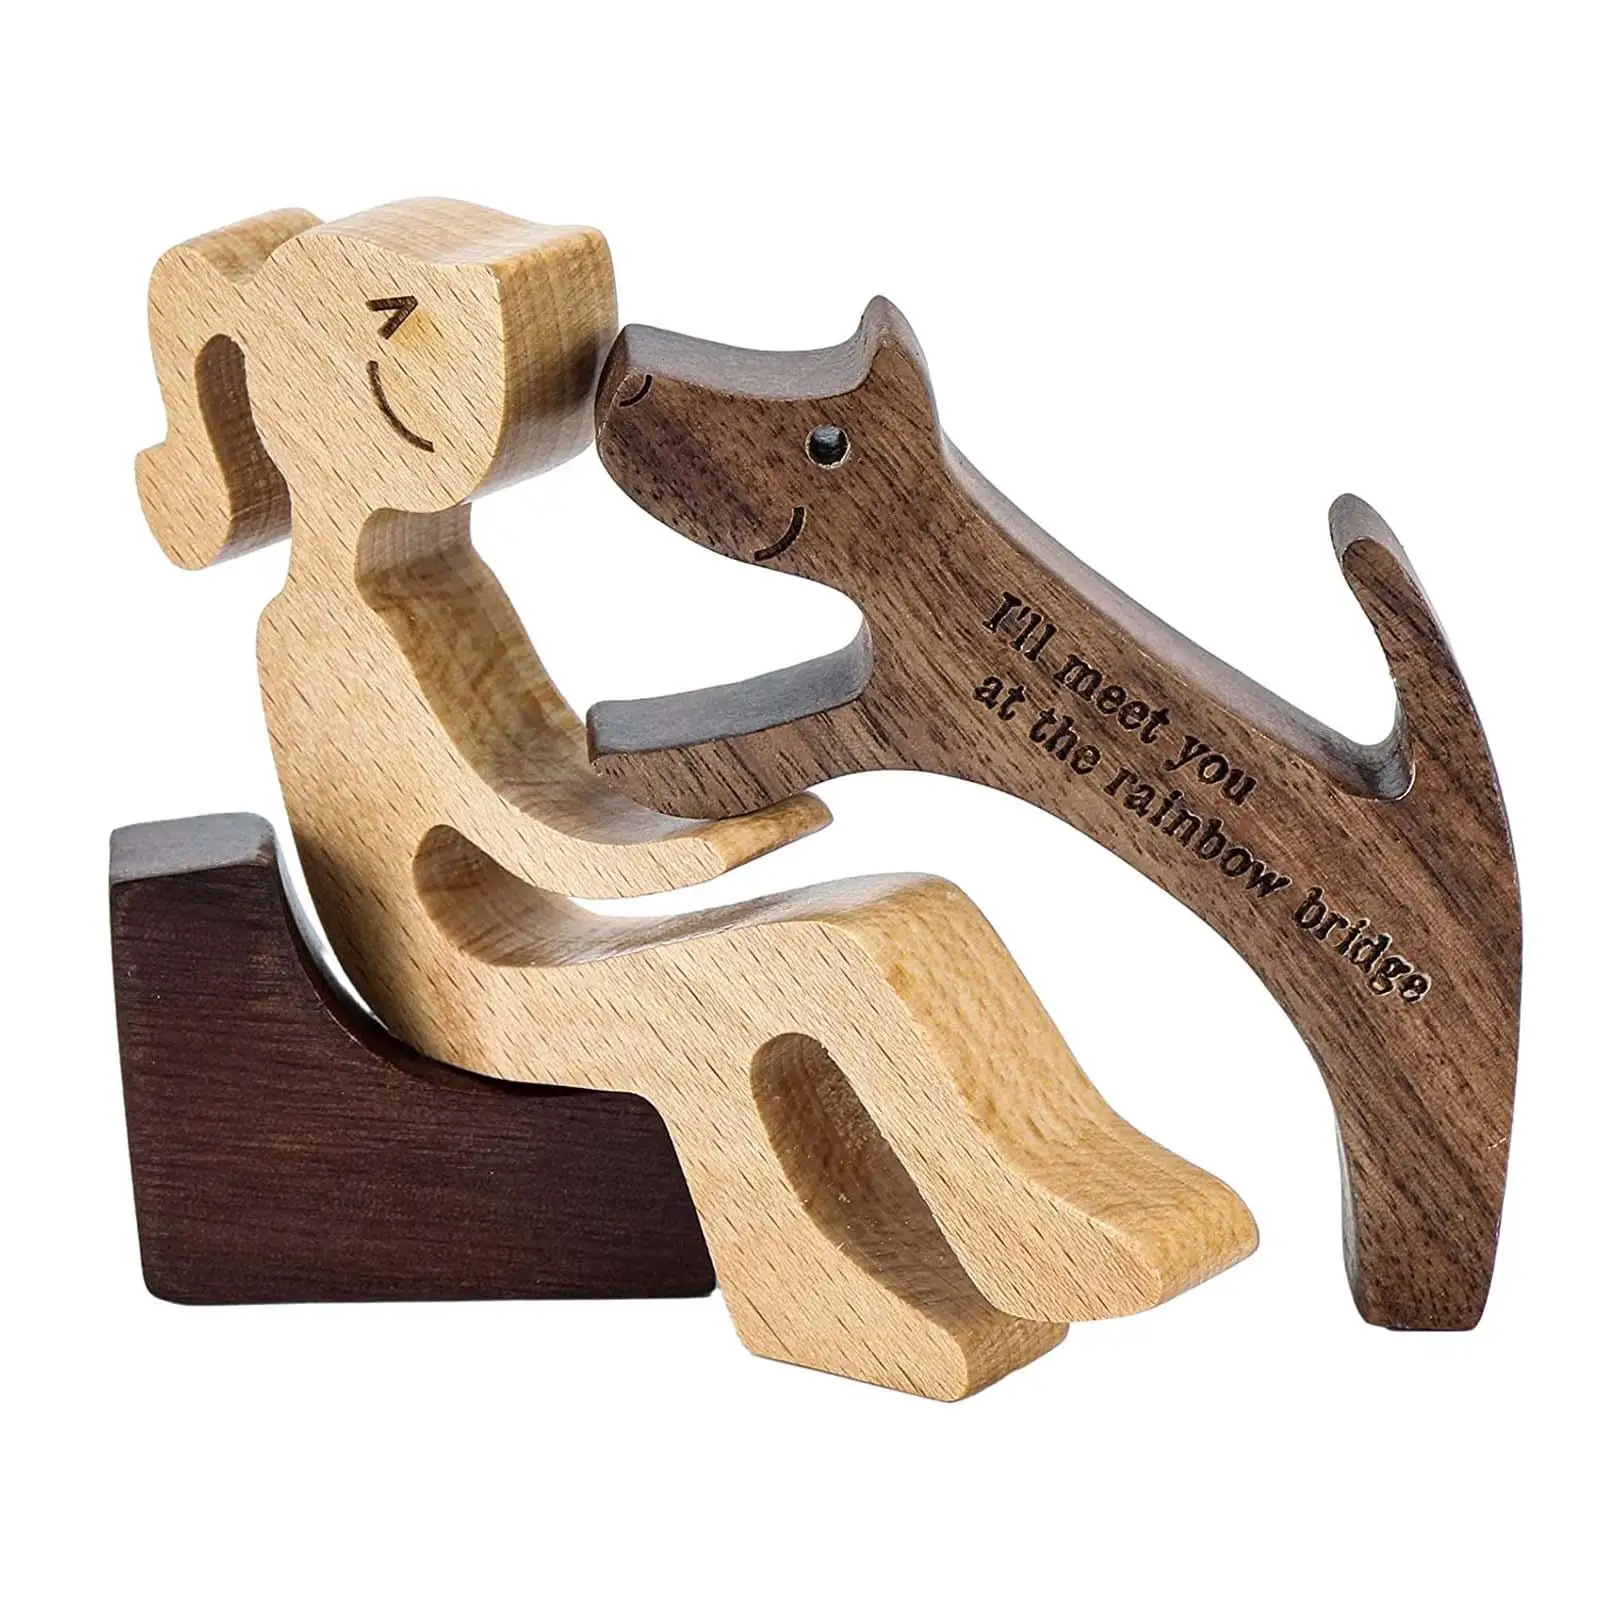 Wooden Dog Gift for Dog Lover Wooden Woman Dog Carving Model Bedroom